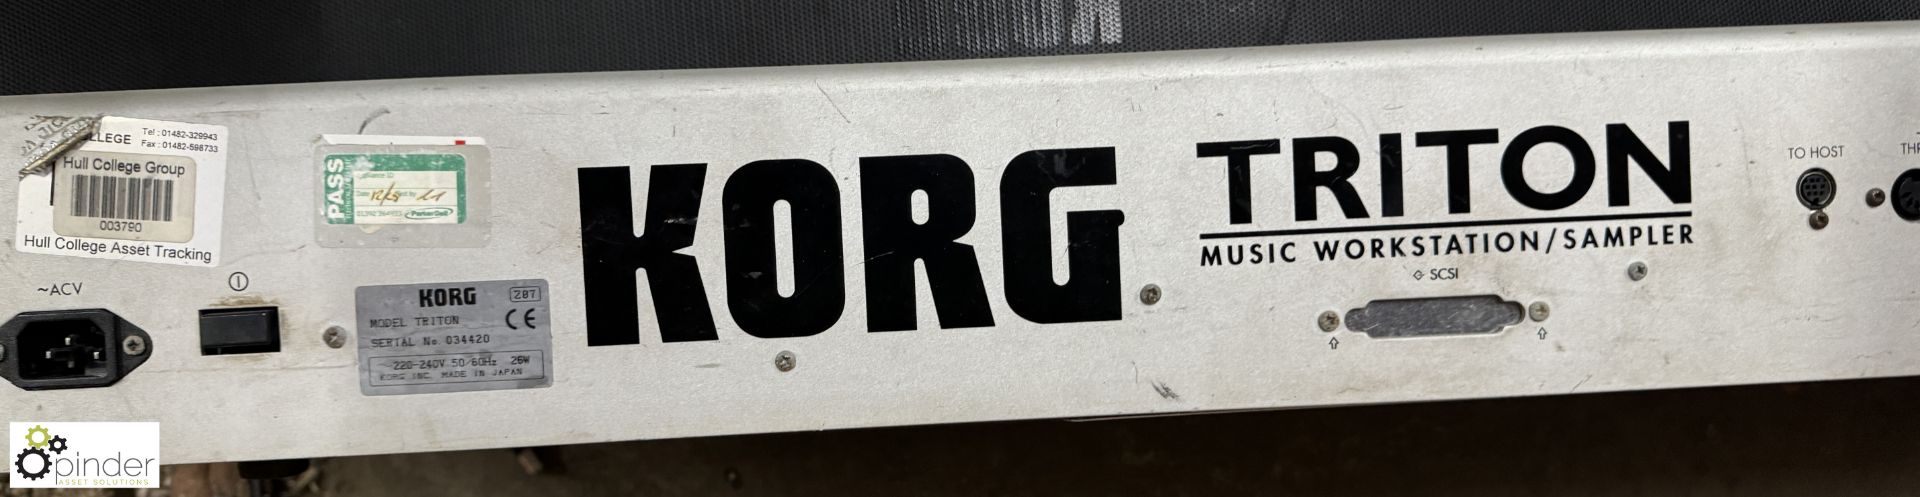 Korg Triton Keyboard - Image 5 of 7